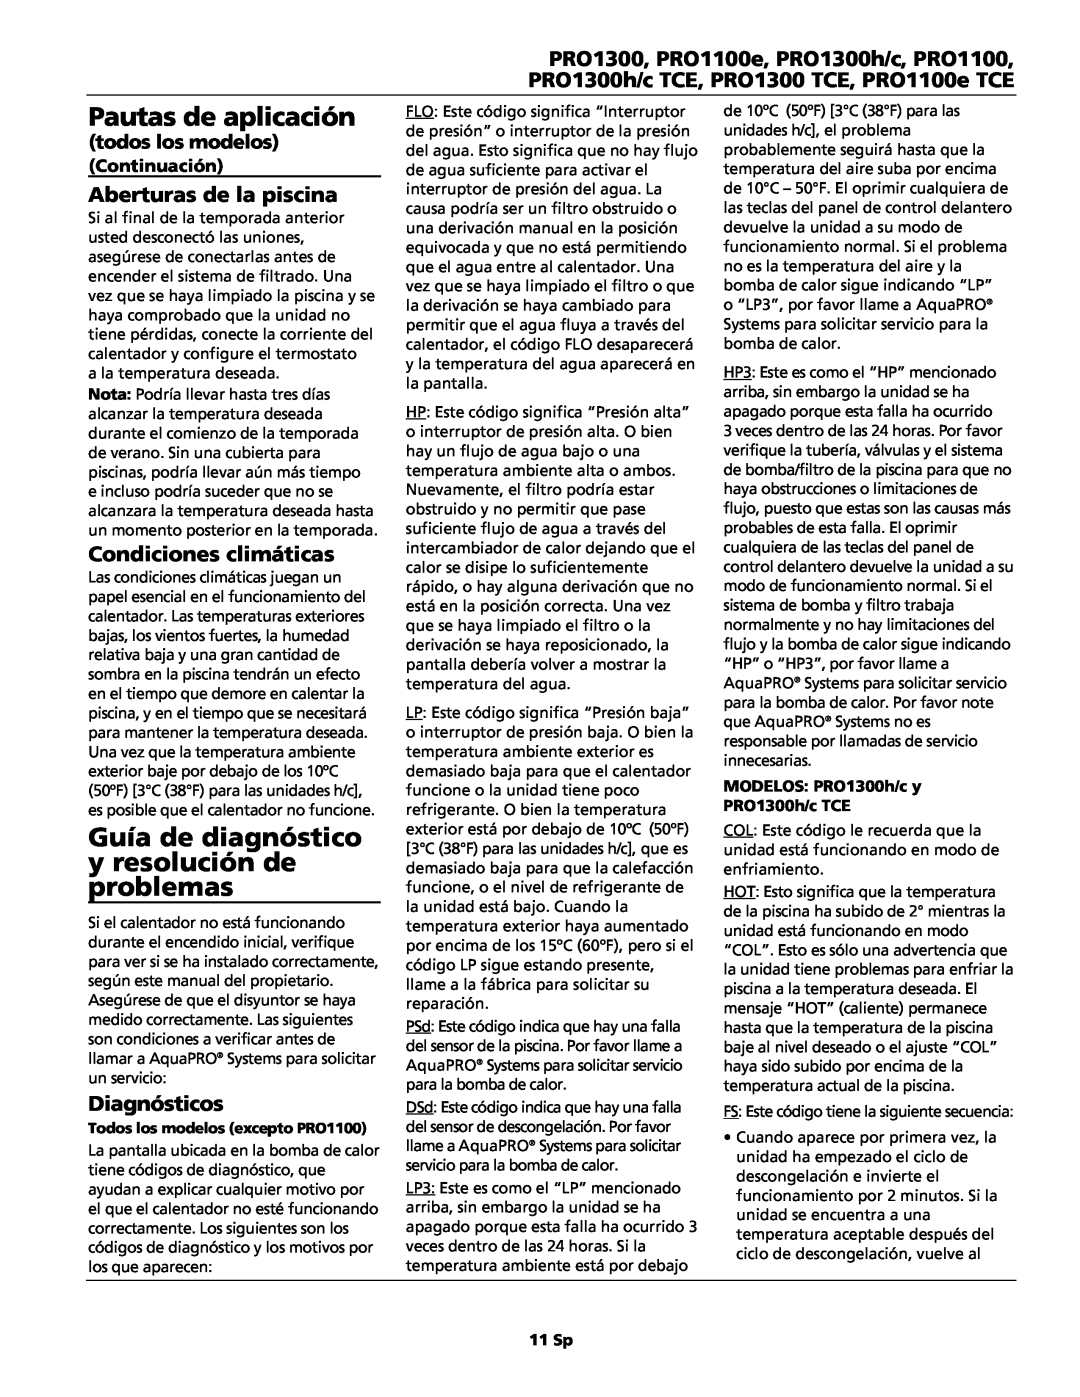 AquaPRO PRO1300 Guía de diagnóstico y resolución de problemas, Aberturas de la piscina, Condiciones climáticas, 11 Sp 